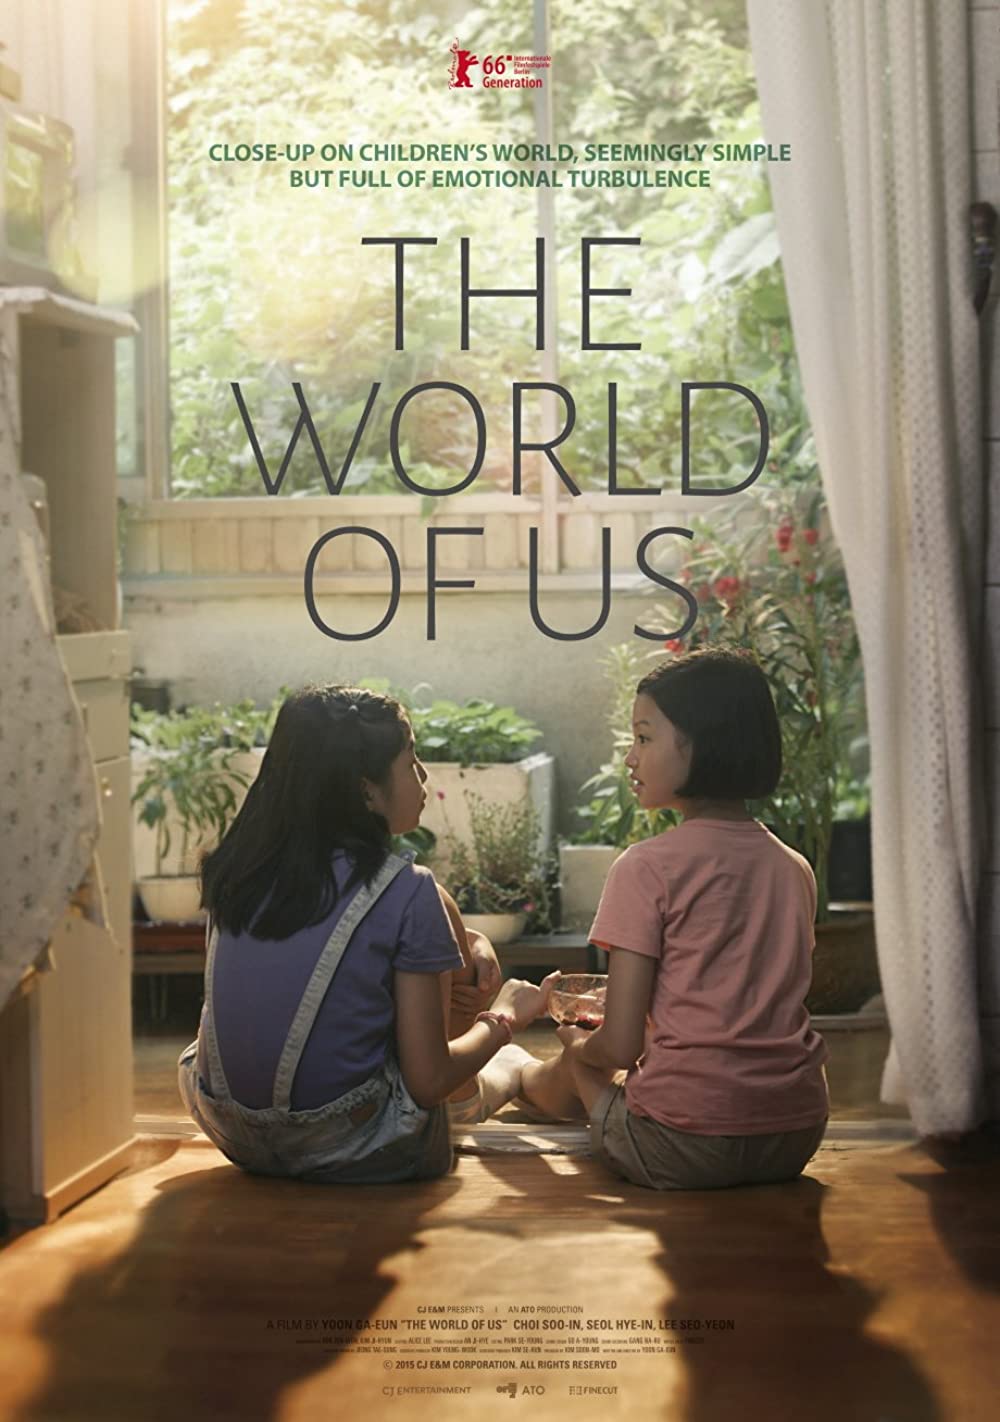 11 Film Korea kisahkan sosok anak kecil, bikin haru sekaligus lucu